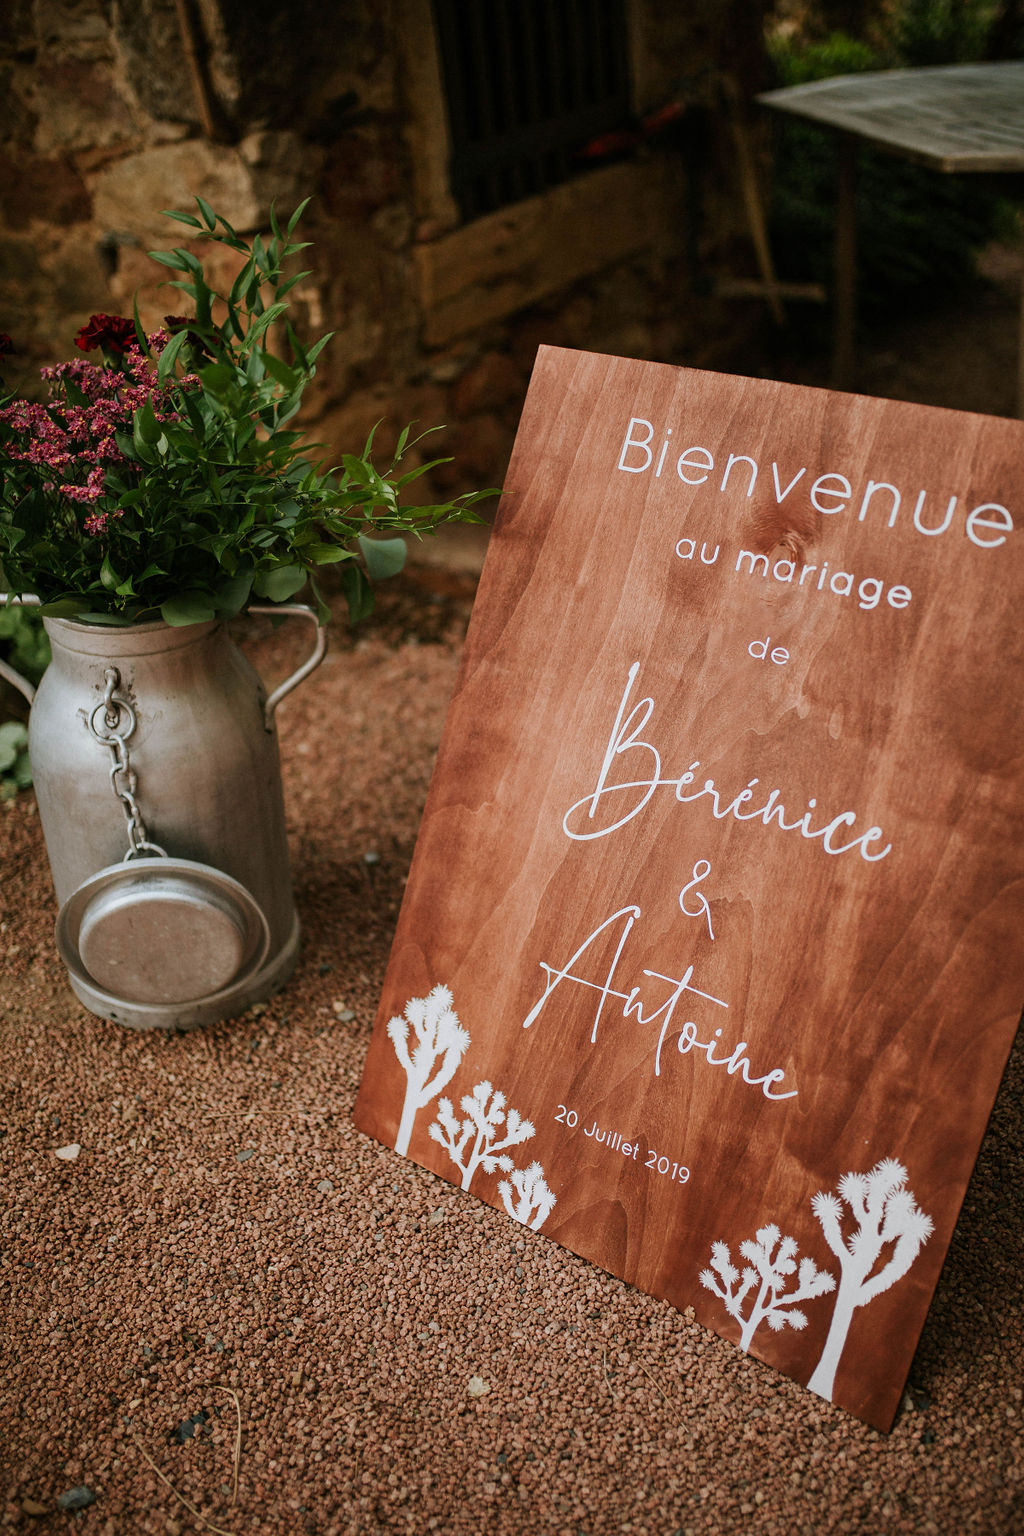 Mariage dans le beaujolais - Bérénice + Antoine - Blog Mariage Madame C